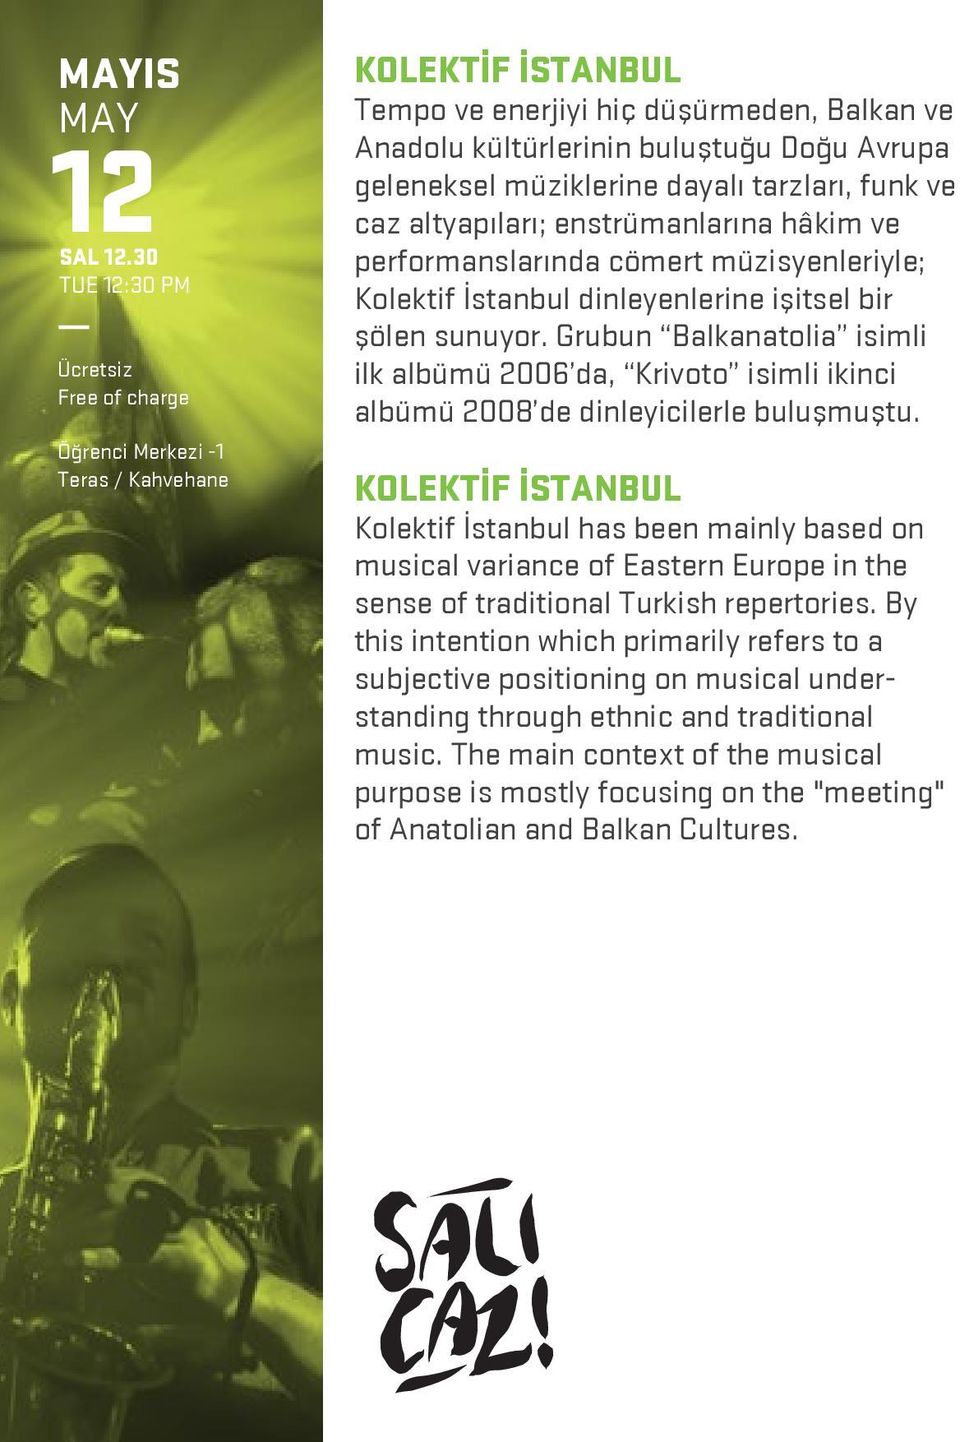 funk ve caz altyapıları; enstrümanlarına hâkim ve performanslarında cömert müzisyenleriyle; Kolektif İstanbul dinleyenlerine işitsel bir şölen sunuyor.